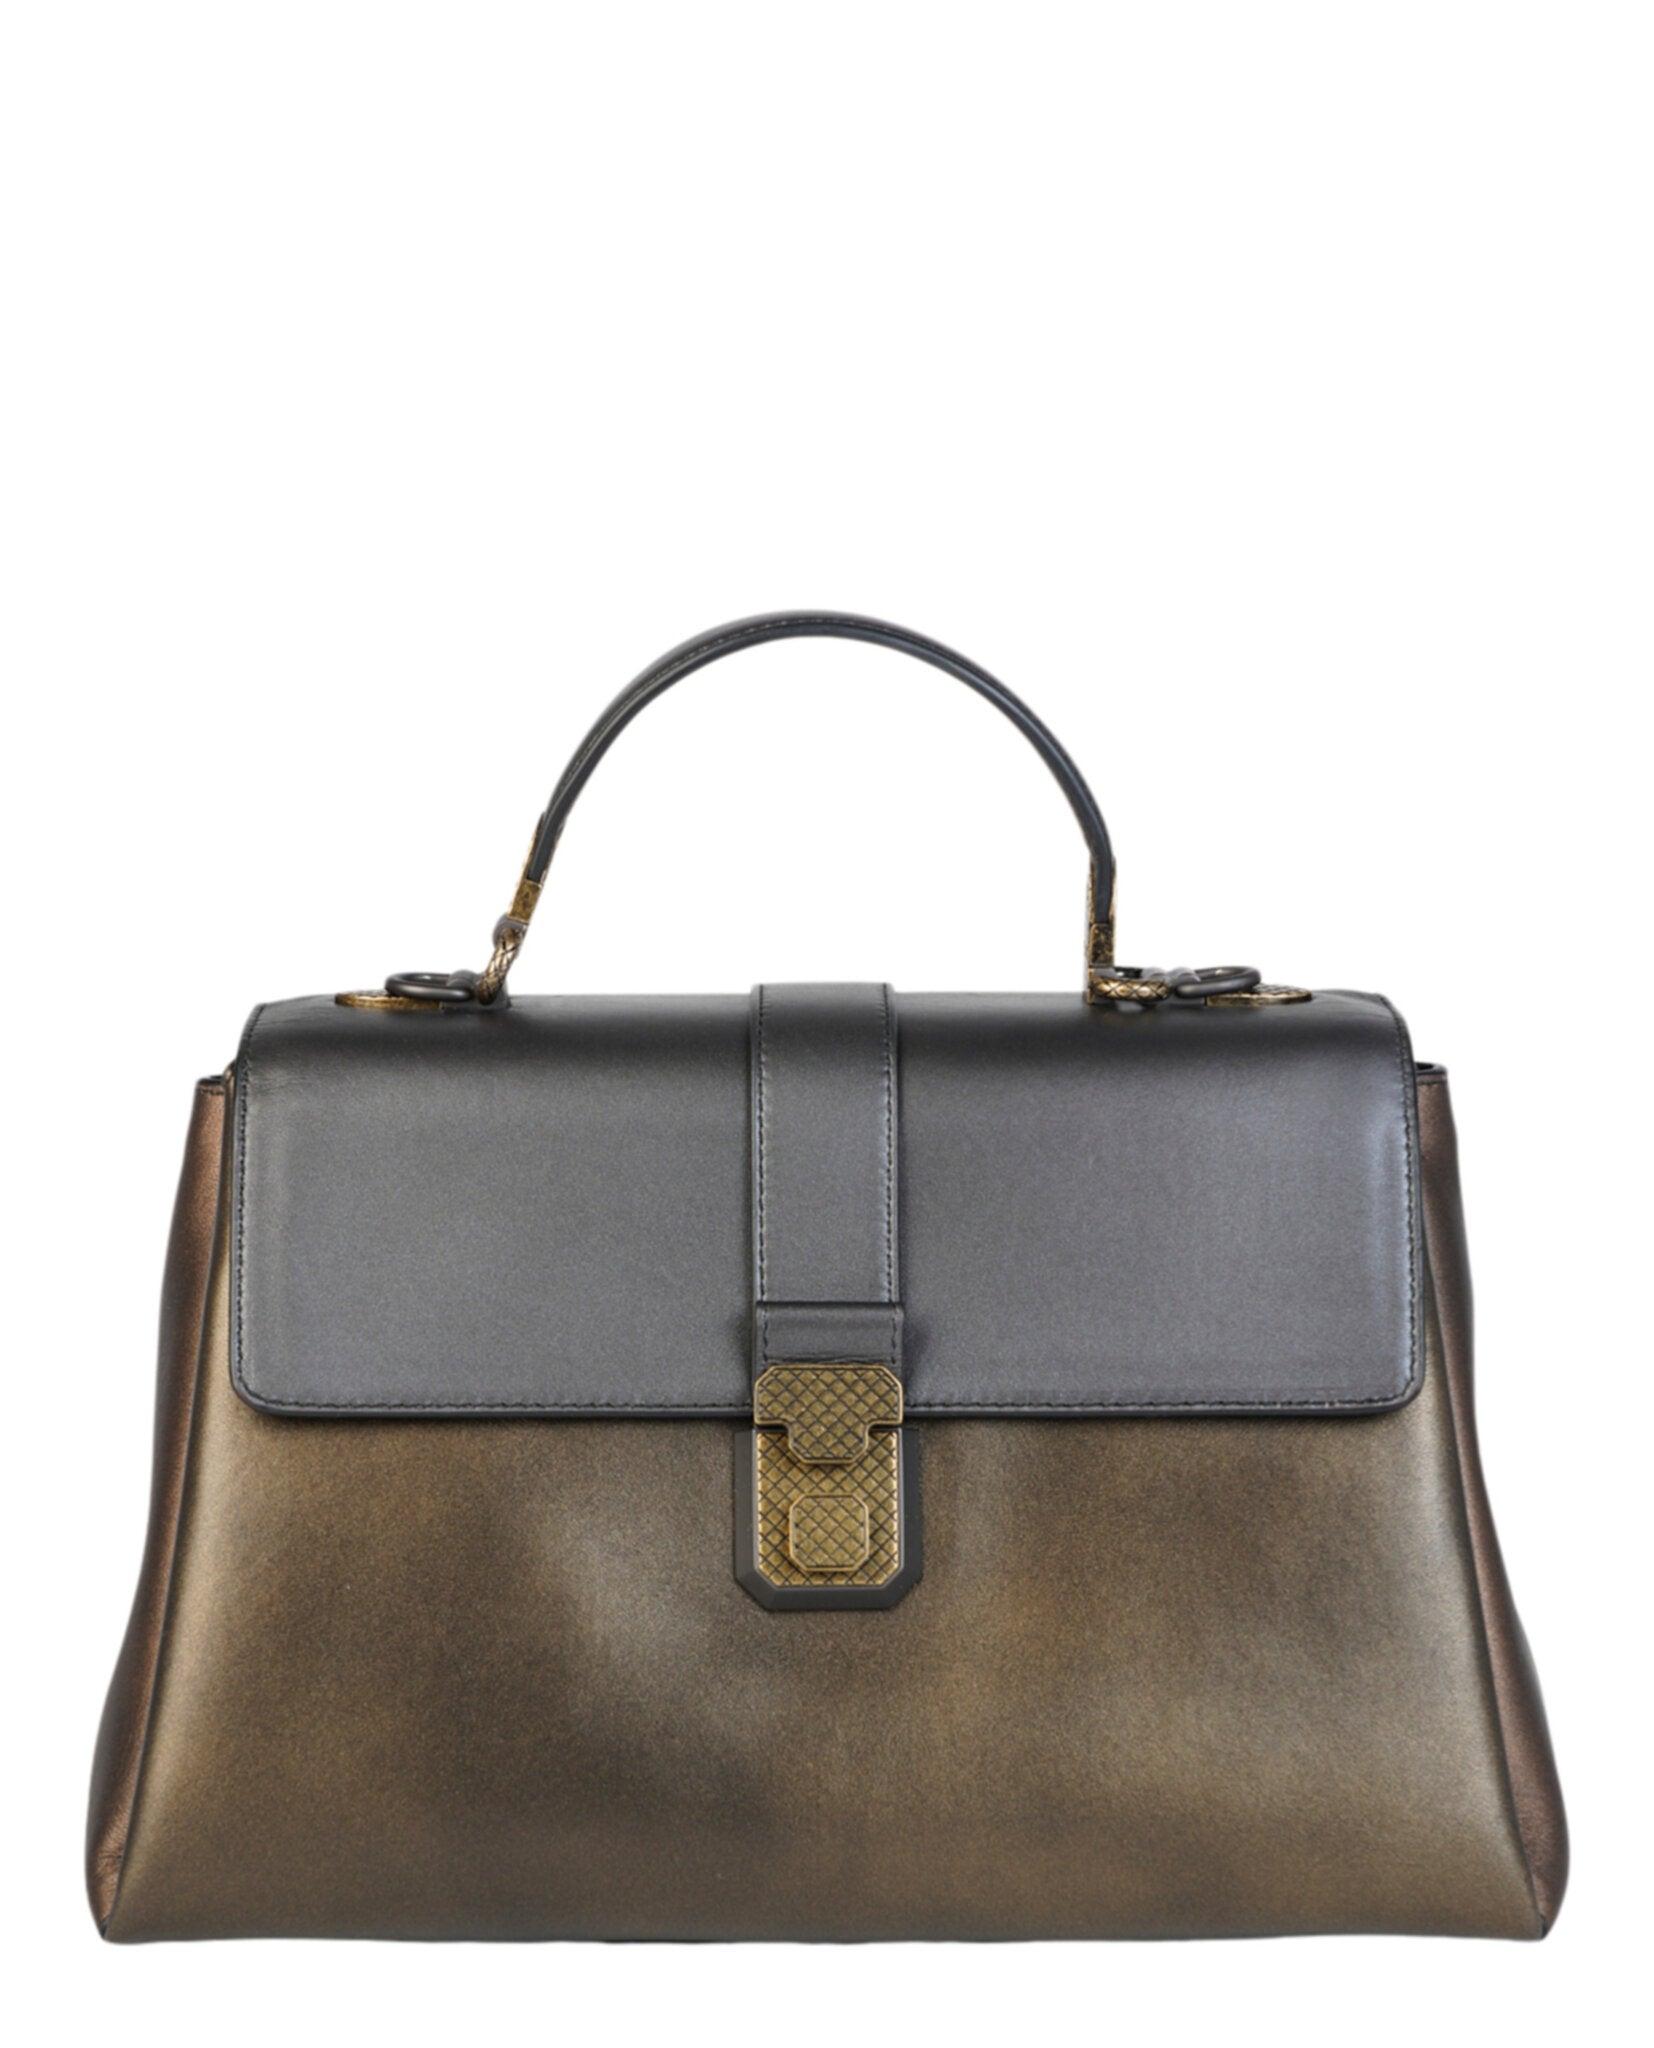 Bottega Veneta Leather 'piazza' Shoulder Bag in Gold (Metallic) | Lyst